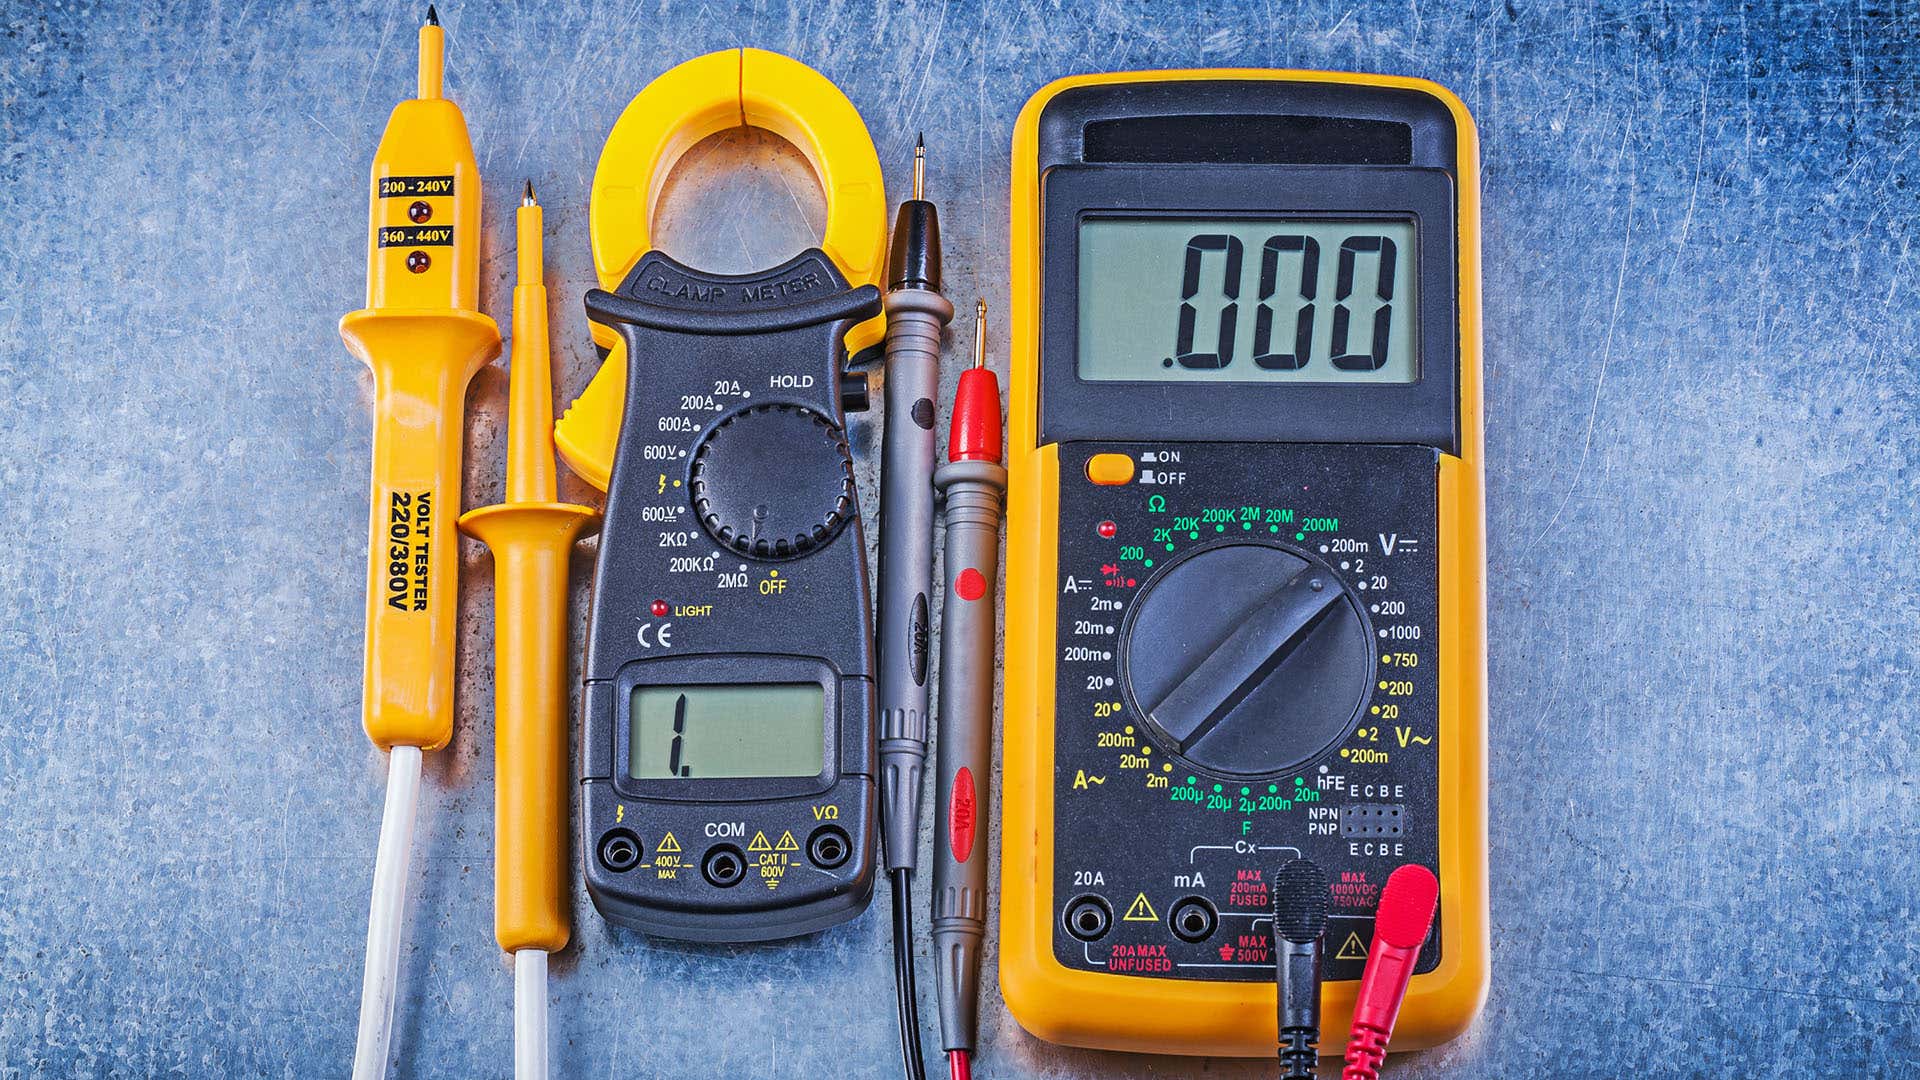 万用表是诊断汽车电池的重要检测工具。